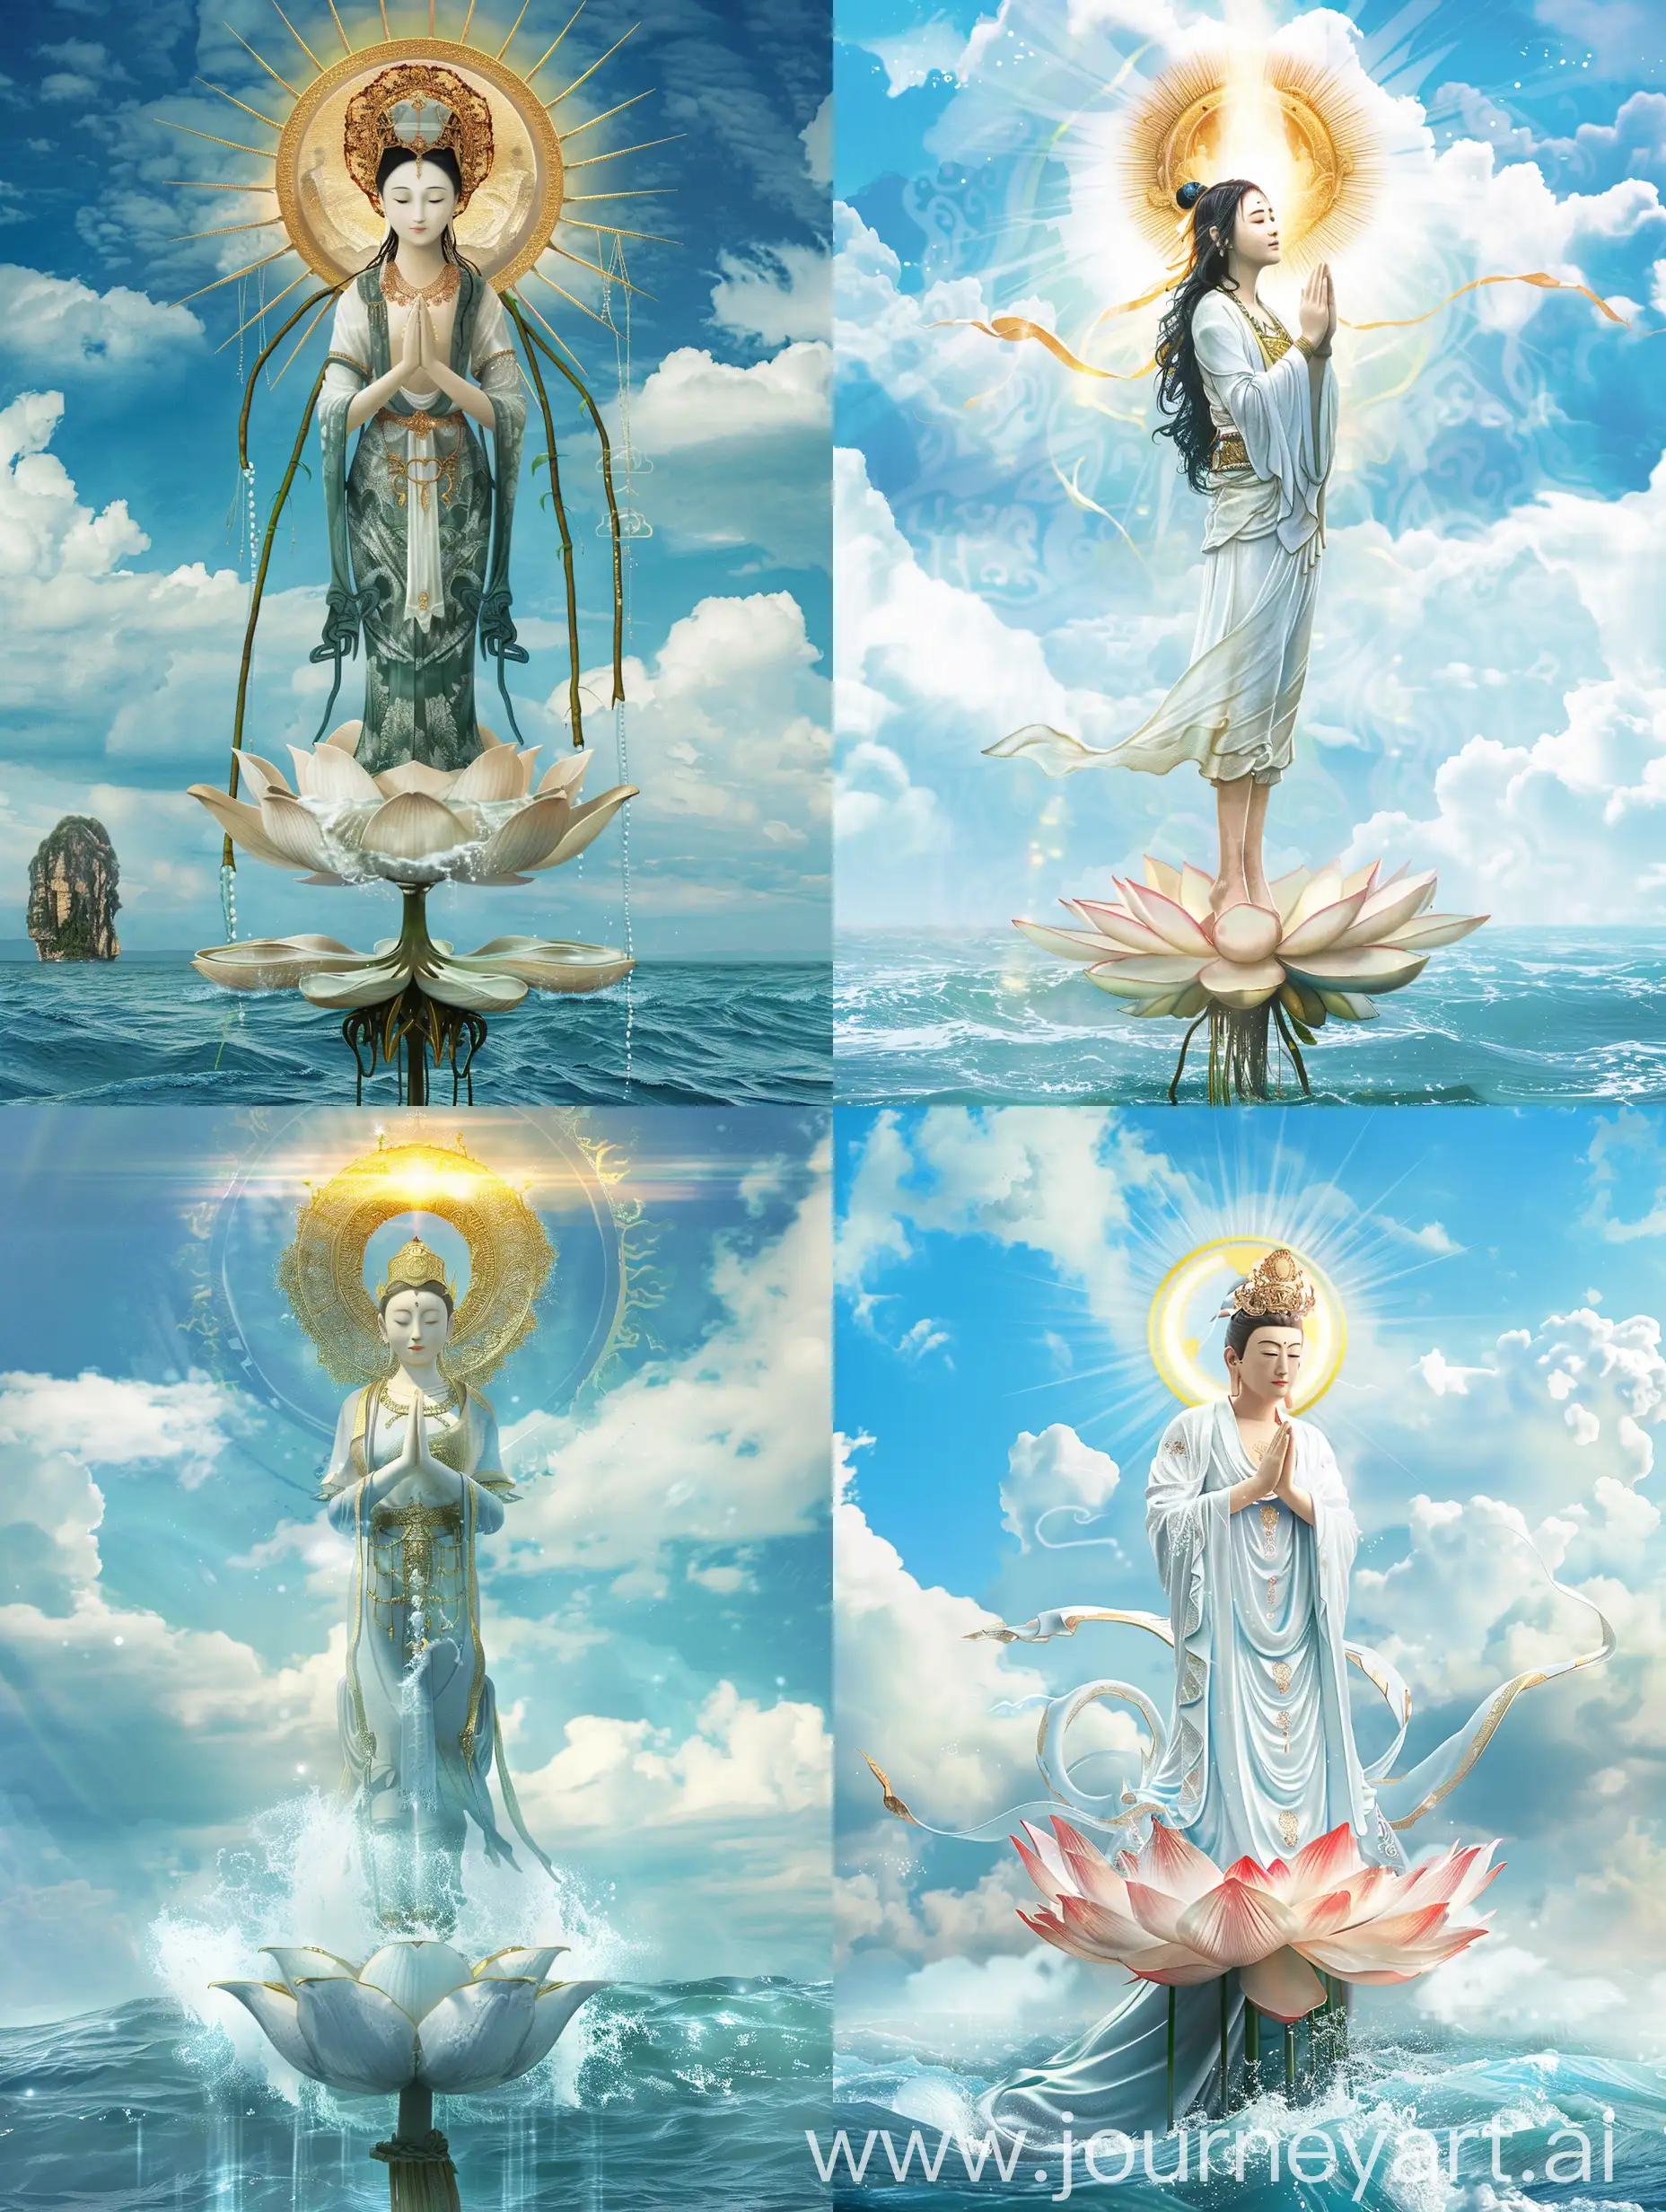 Serene-Guanyin-Bodhisattva-in-Prayer-on-Lotus-Amidst-Heavenly-Light